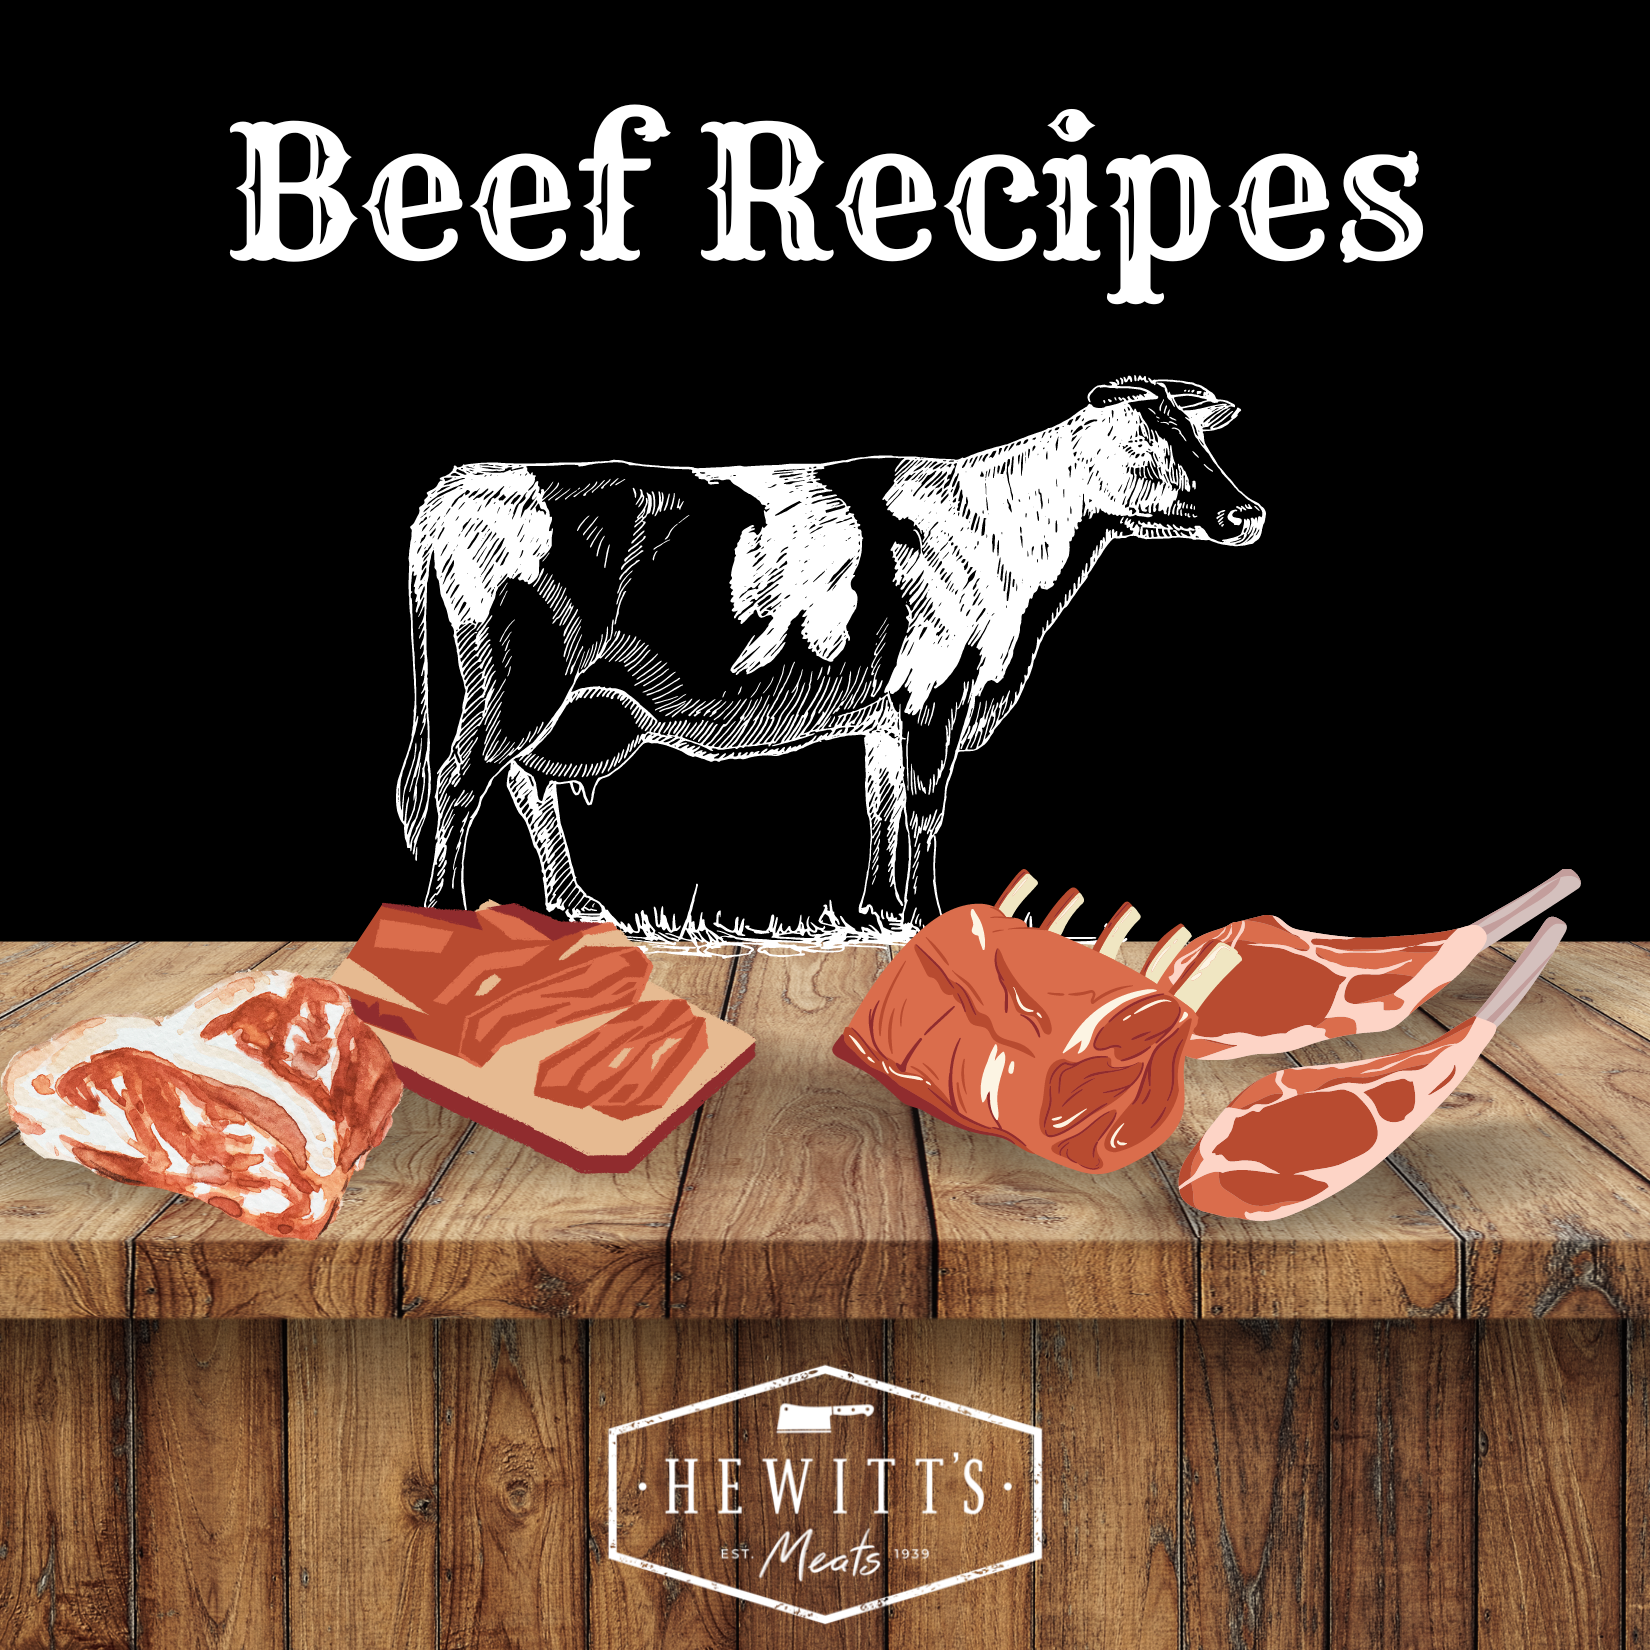 Hewitt's Meats Beef Recipes